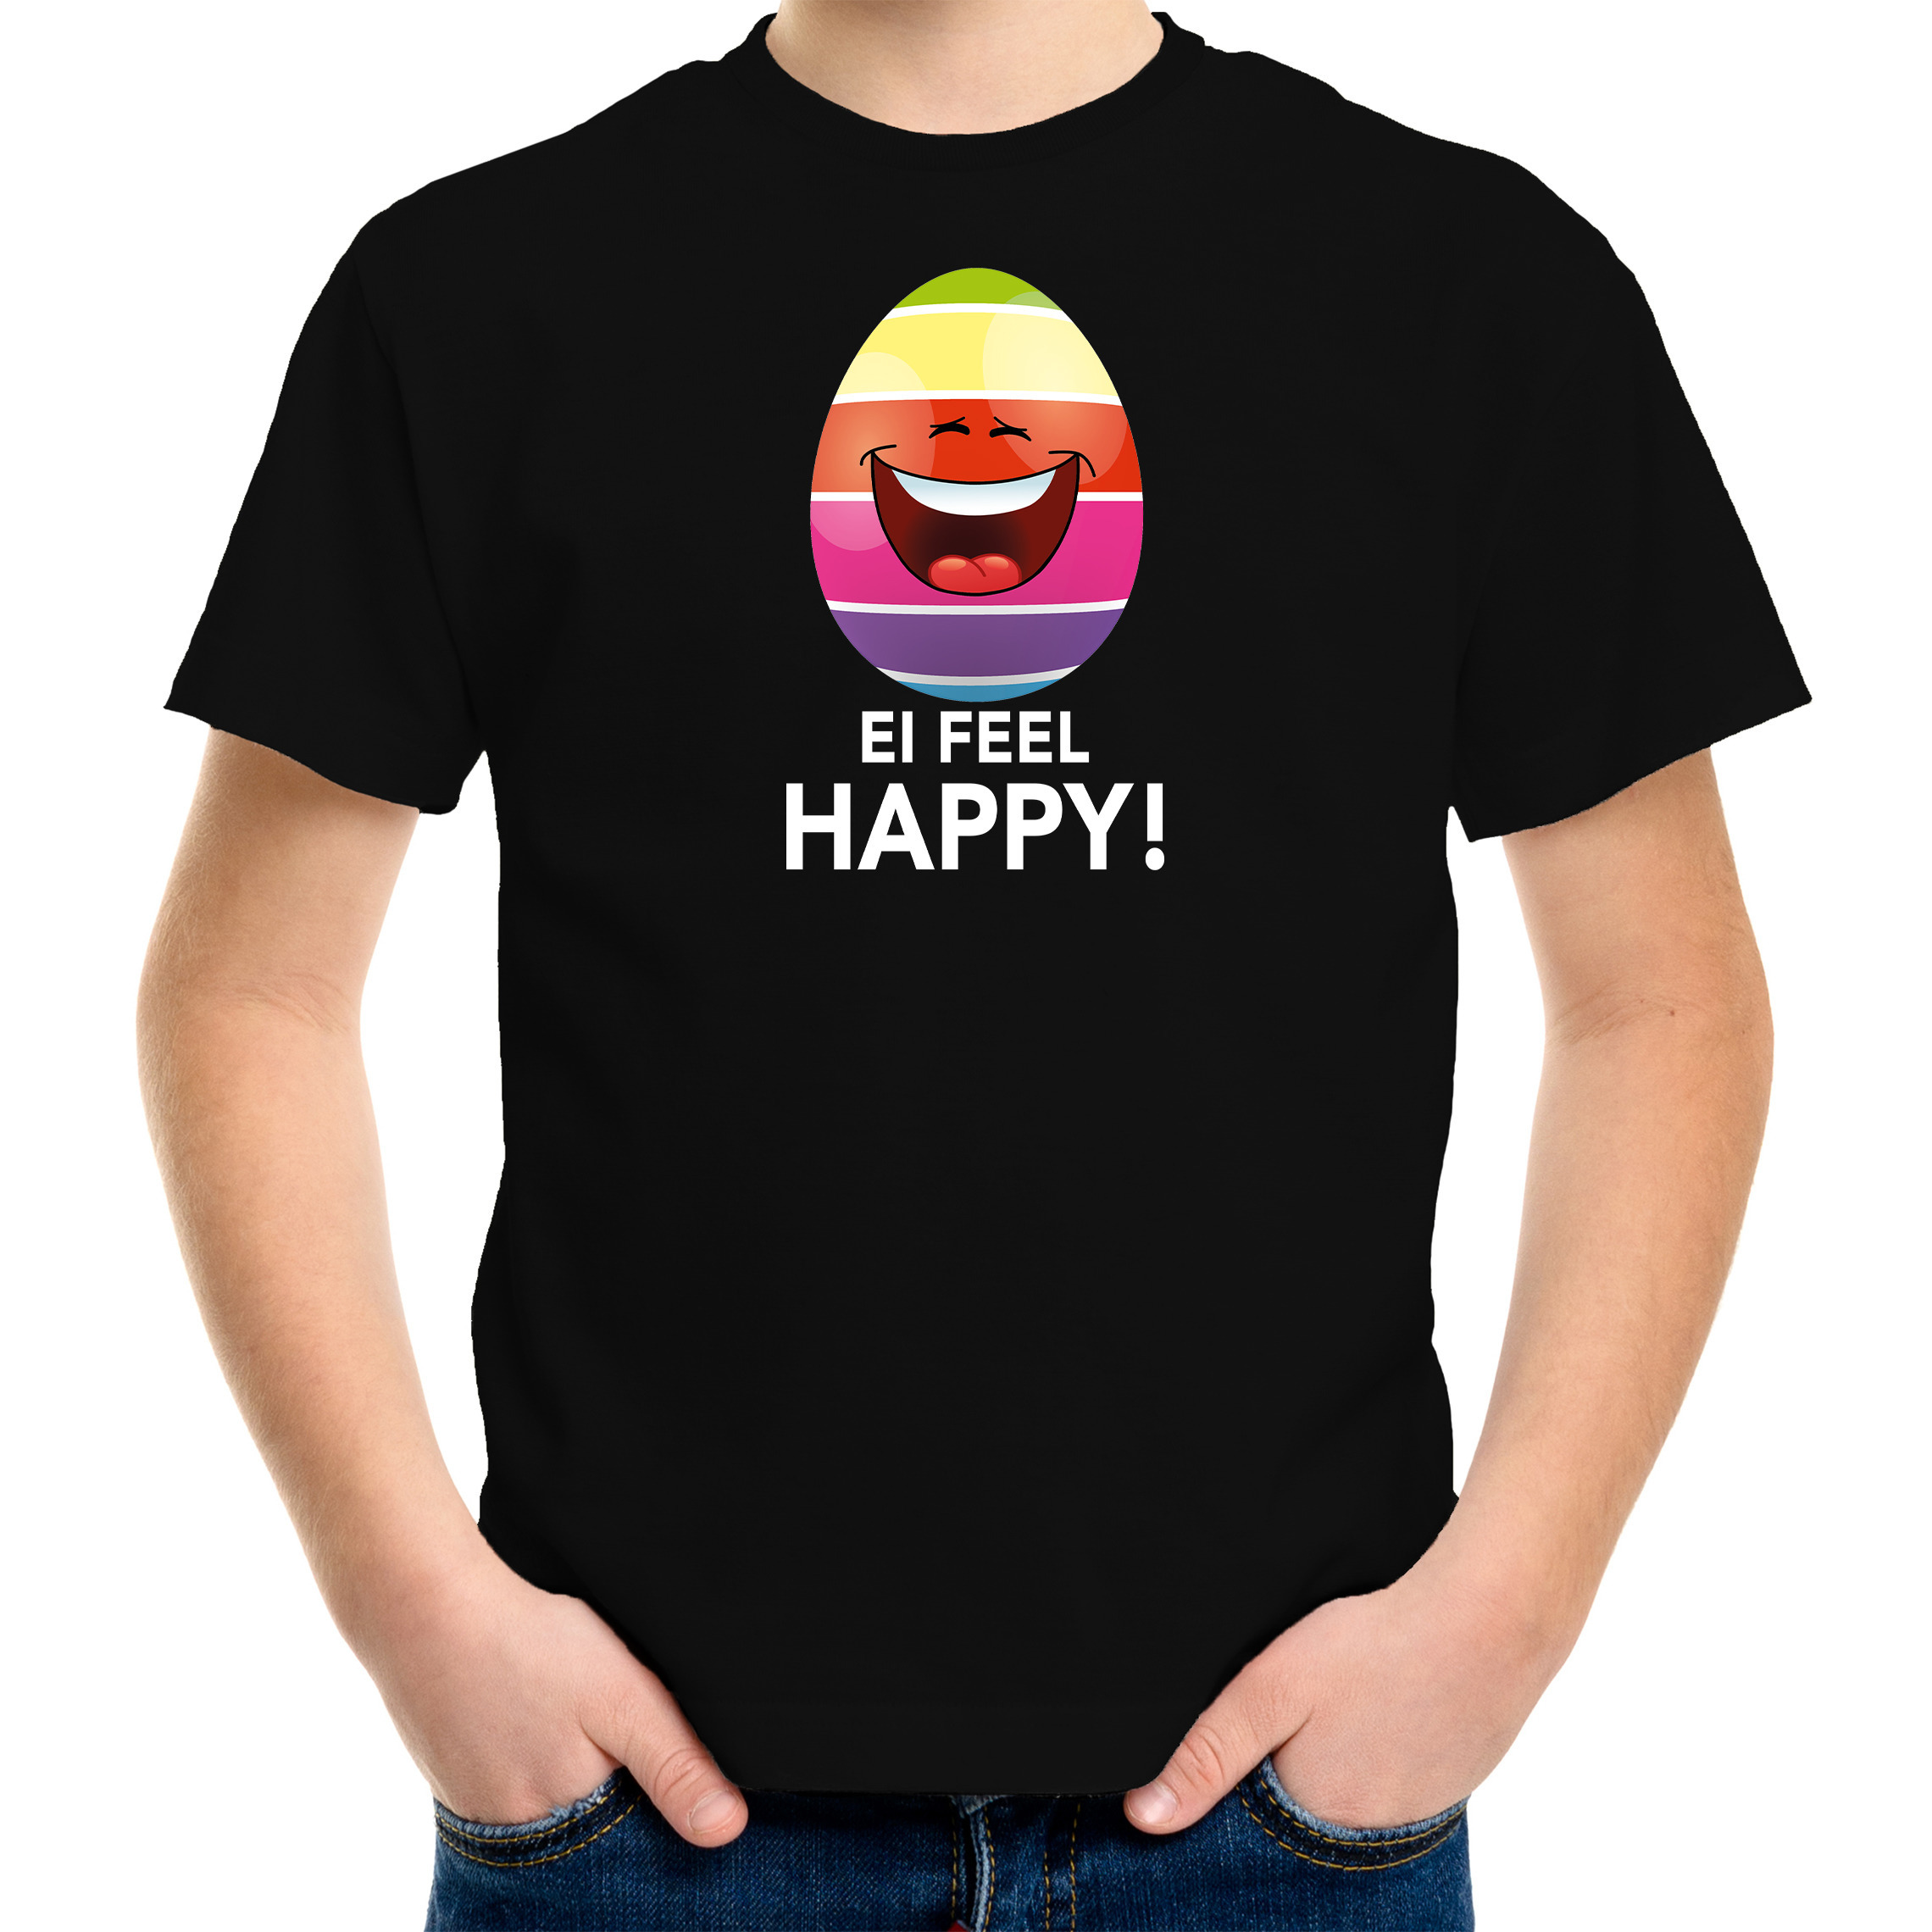 Vrolijk Paasei ei feel happy t-shirt zwart voor kinderen Paas kleding-outfit